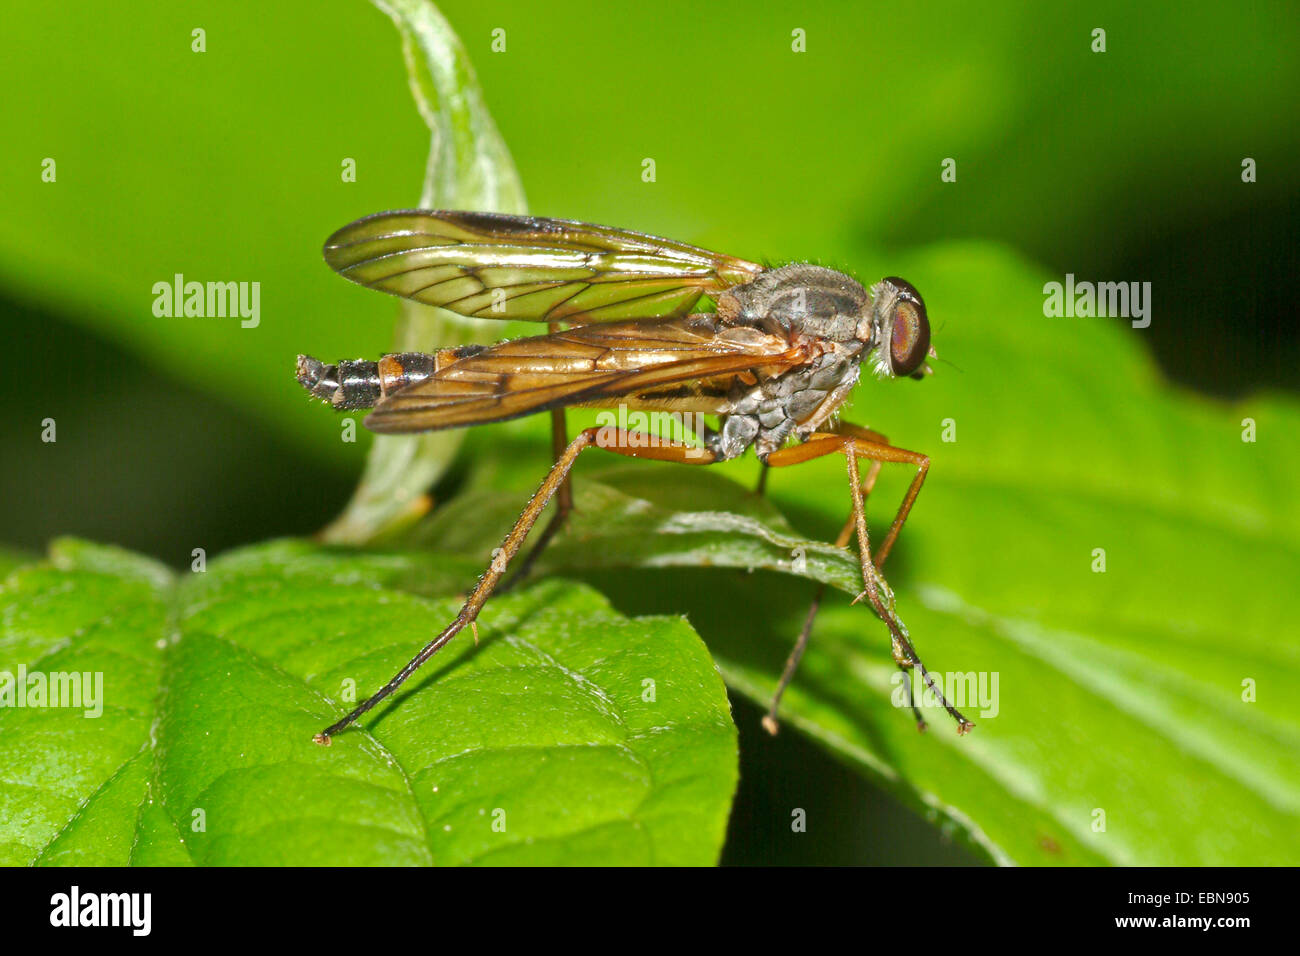 Snipe volar (Symphoromyia inmaculada), sentada sobre una hoja, Alemania Foto de stock